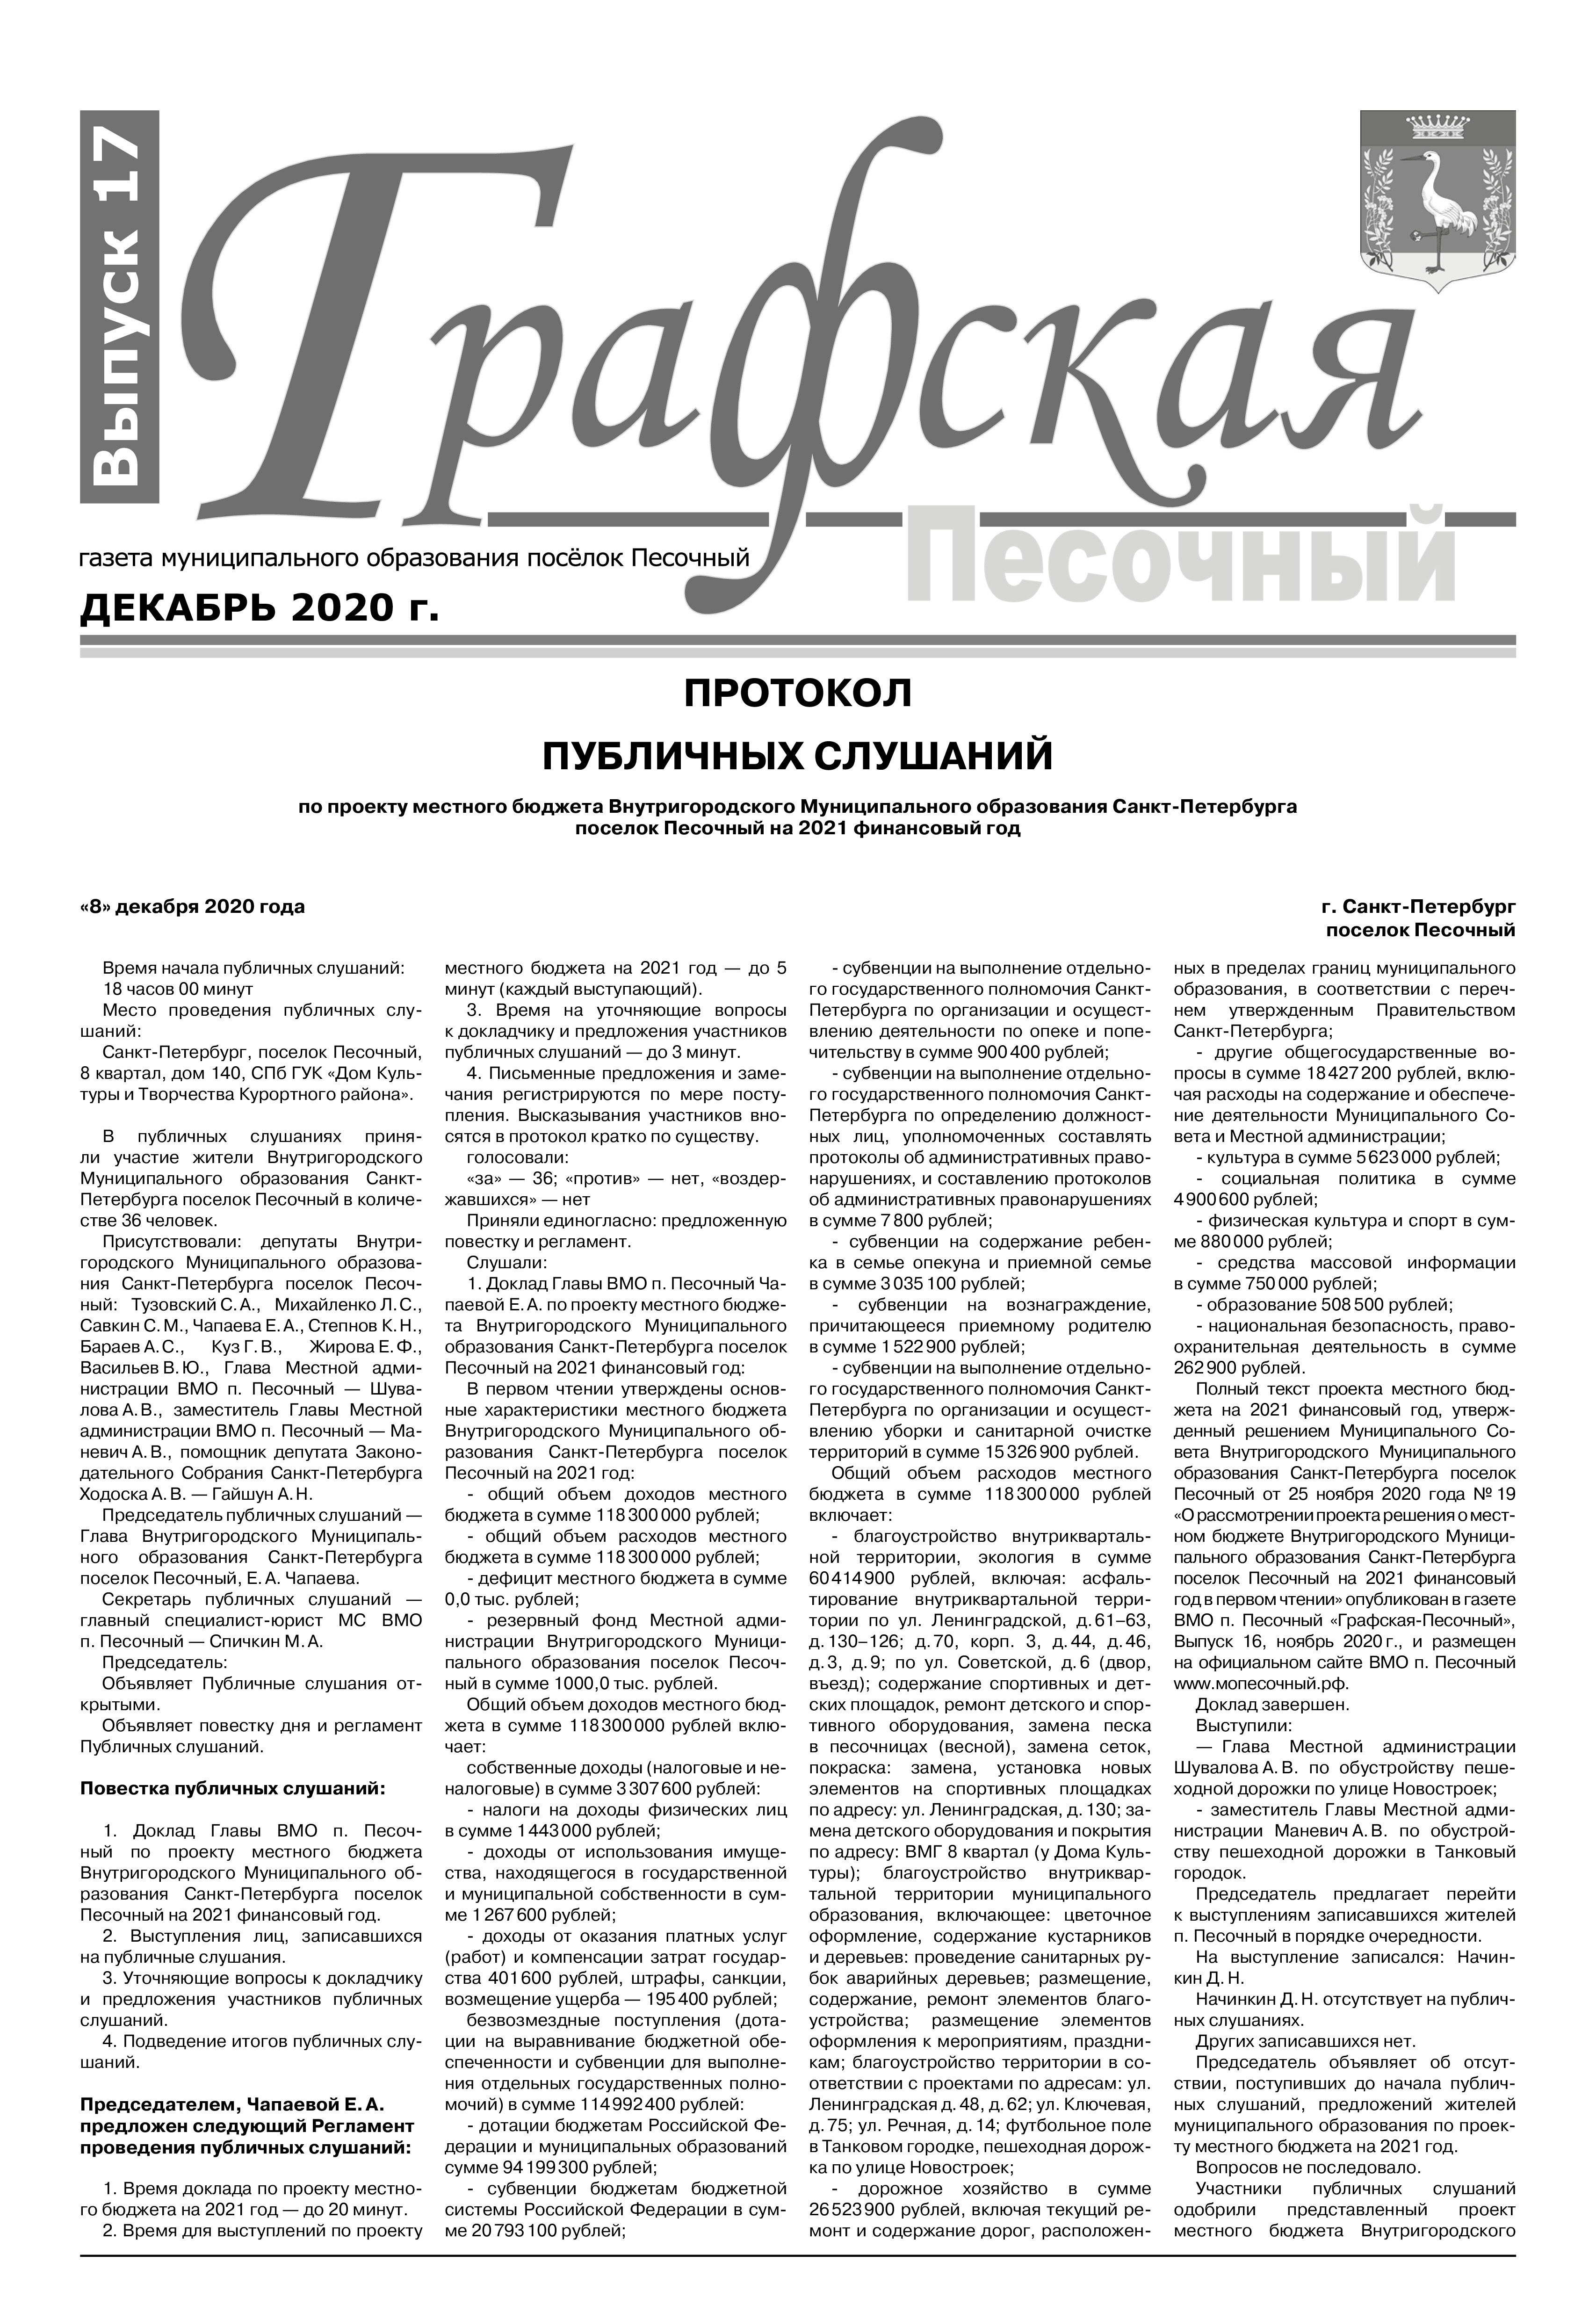 Газета "Графская" выпуск № 17, декабрь 2020